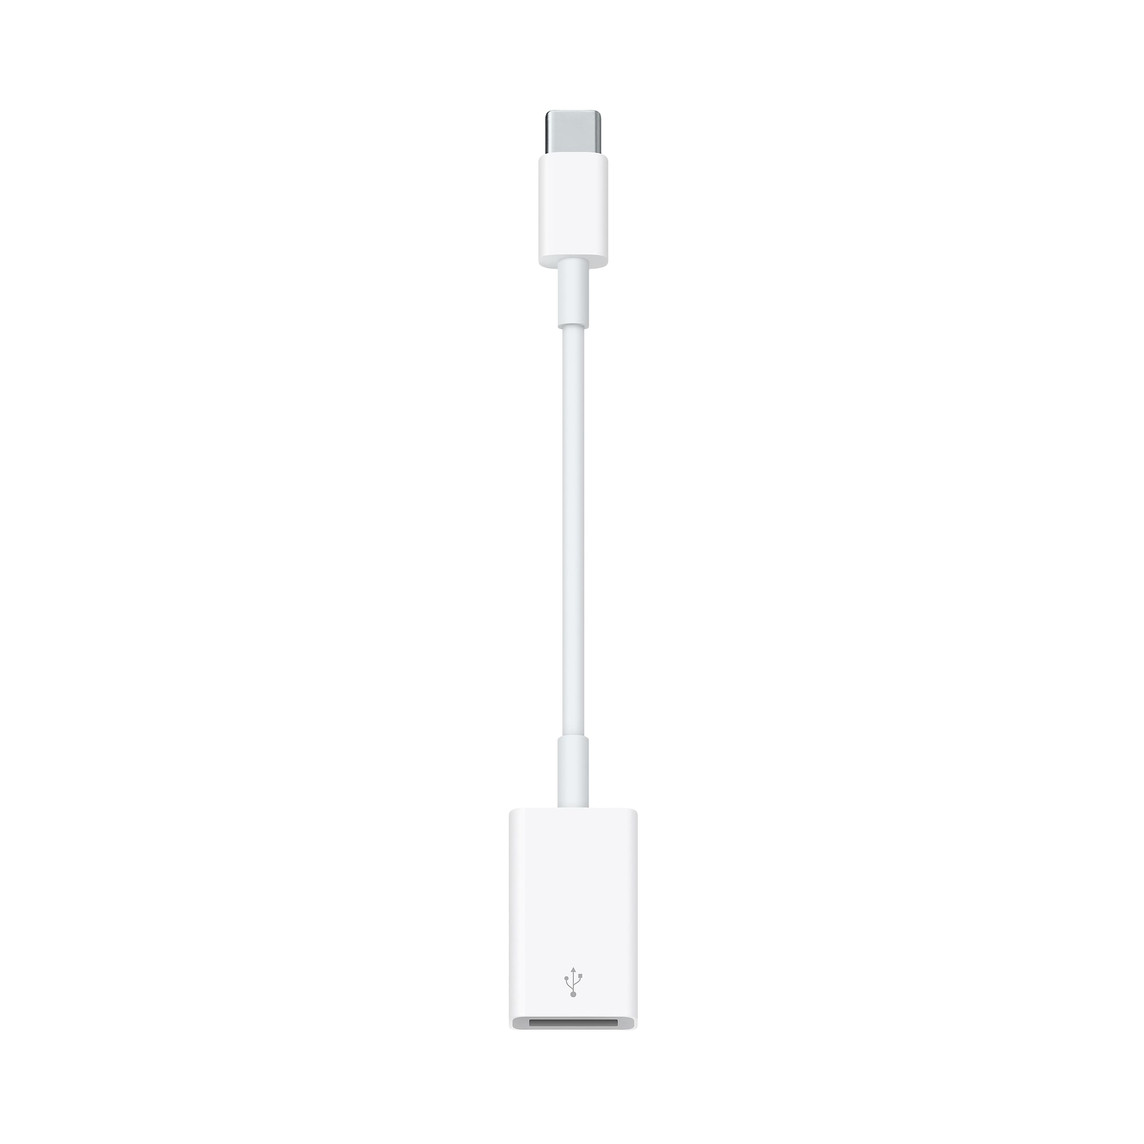 O Adaptador USB-C para USB permite ligar dispositivos iOS e acessórios USB a um Mac com porta USB-C ou Thunderbolt 3 (USB-C).